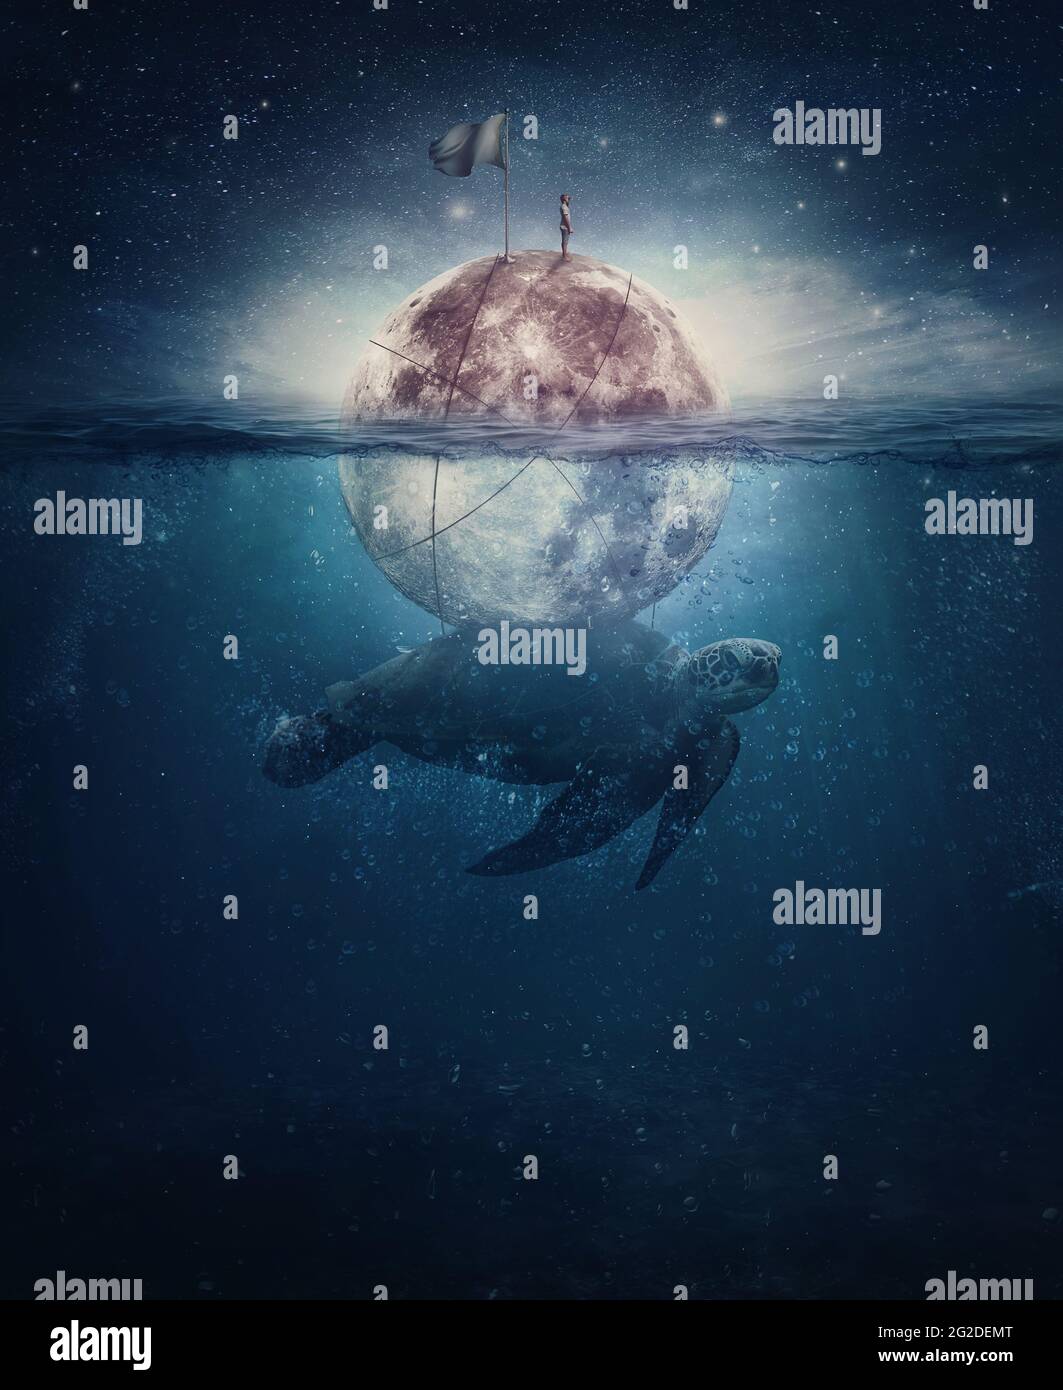 Escena surrealista con una tortuga, enorme criatura marina, llevando la luna llena con un solo marinero en la parte superior. Fantasía marina submarina, y cielo estrellado abov Foto de stock